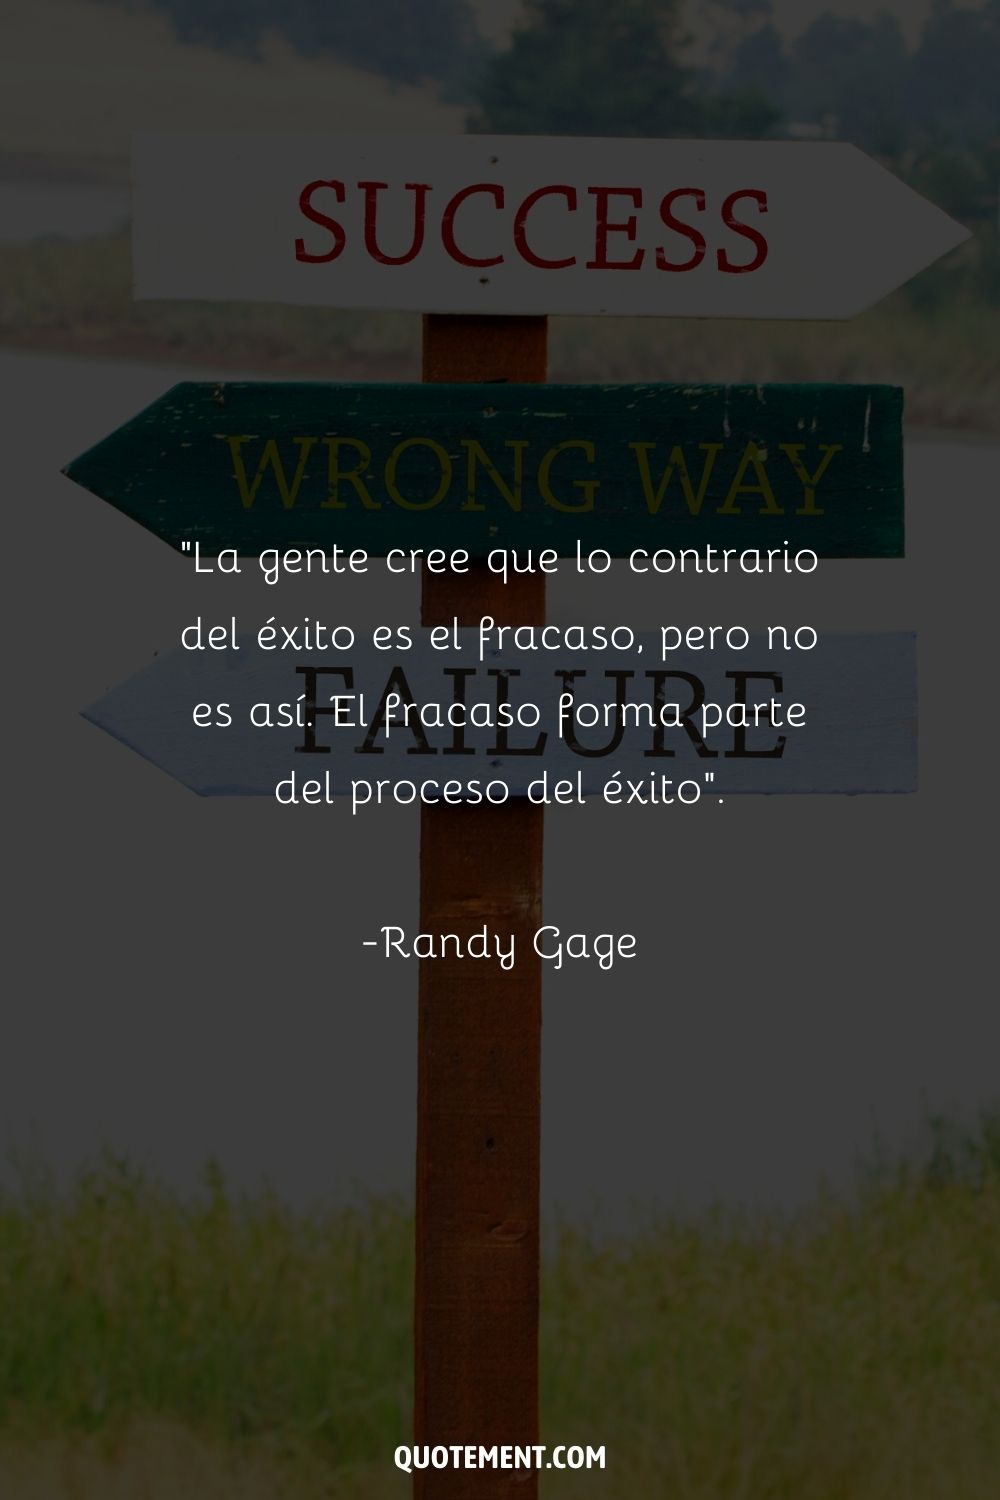 "La gente cree que lo contrario del éxito es el fracaso, pero no es así. El fracaso forma parte del proceso del éxito". - Randy Gage